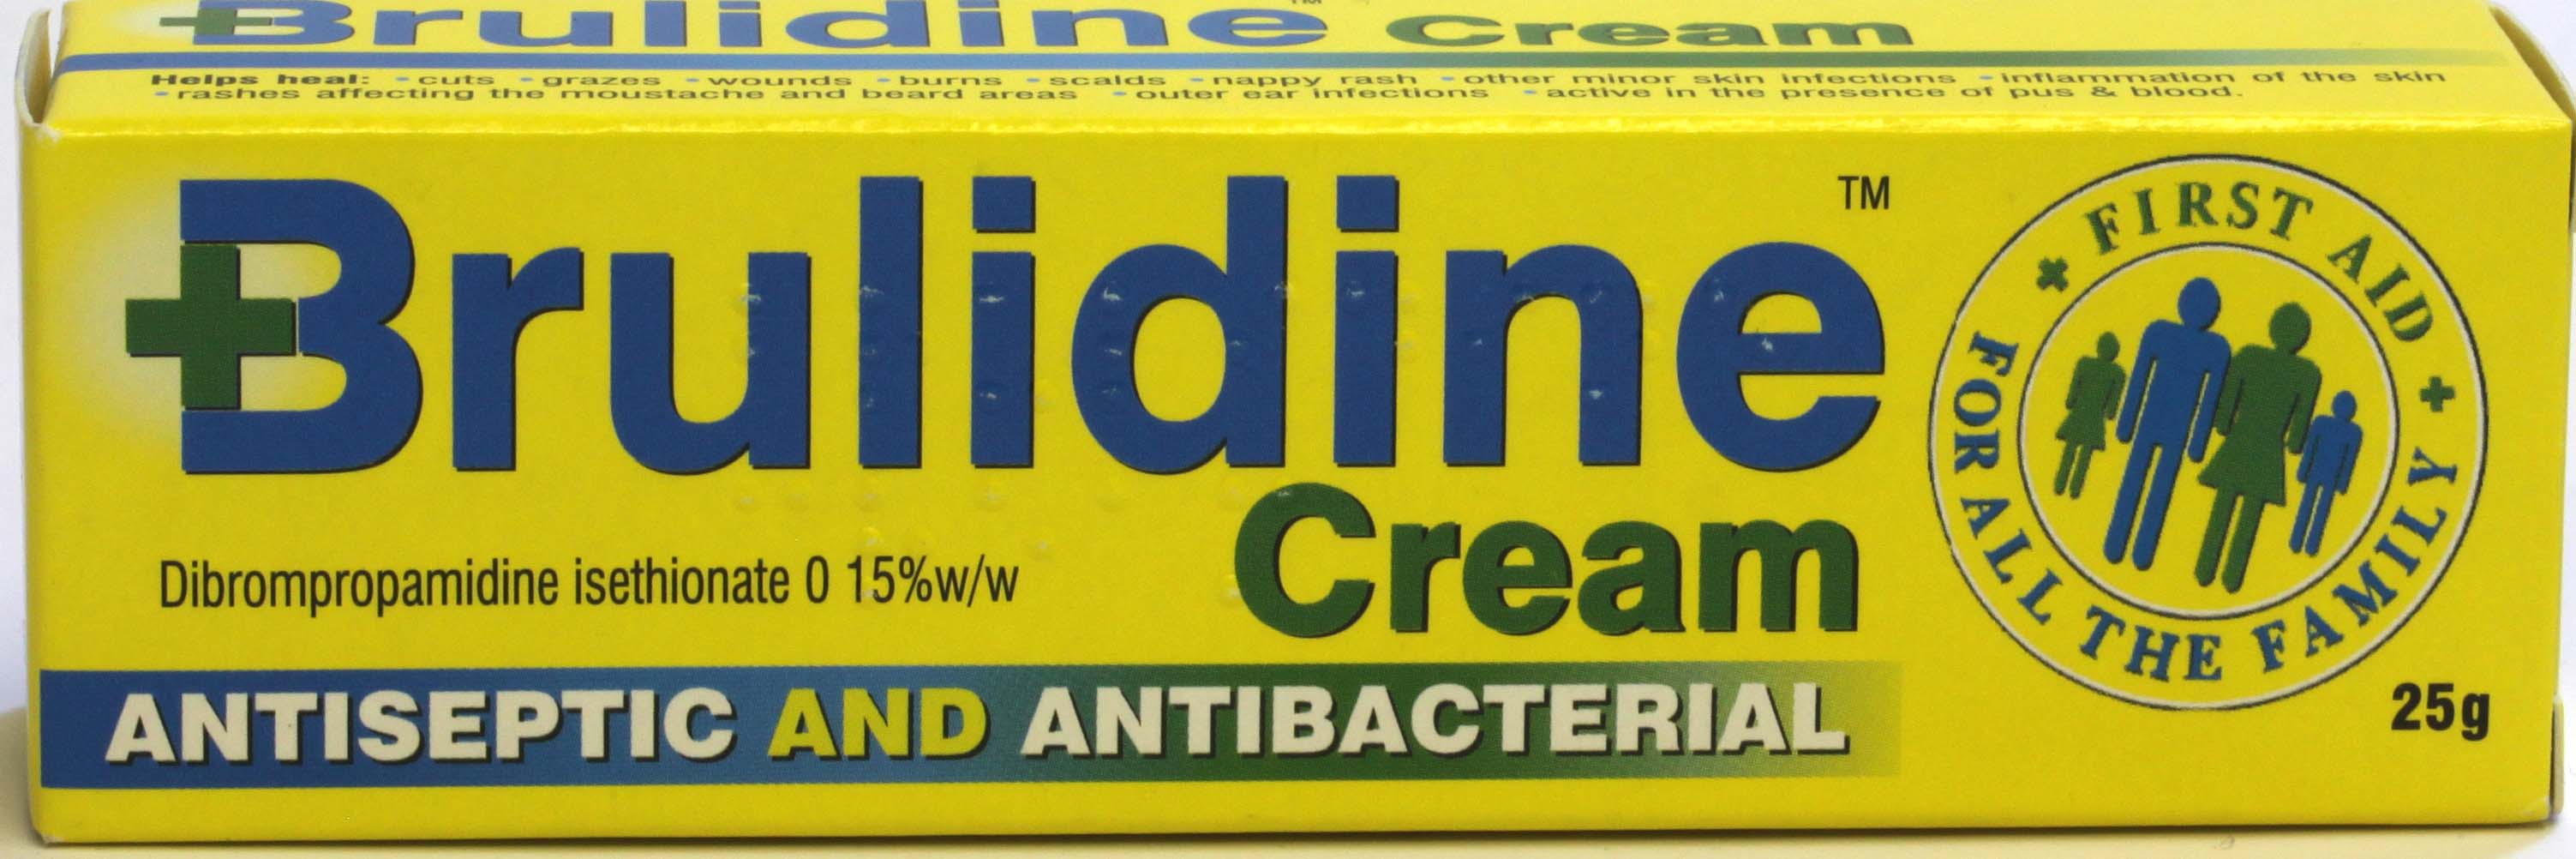 Brulidine Cream Antiseptic & Antibacterial 25g